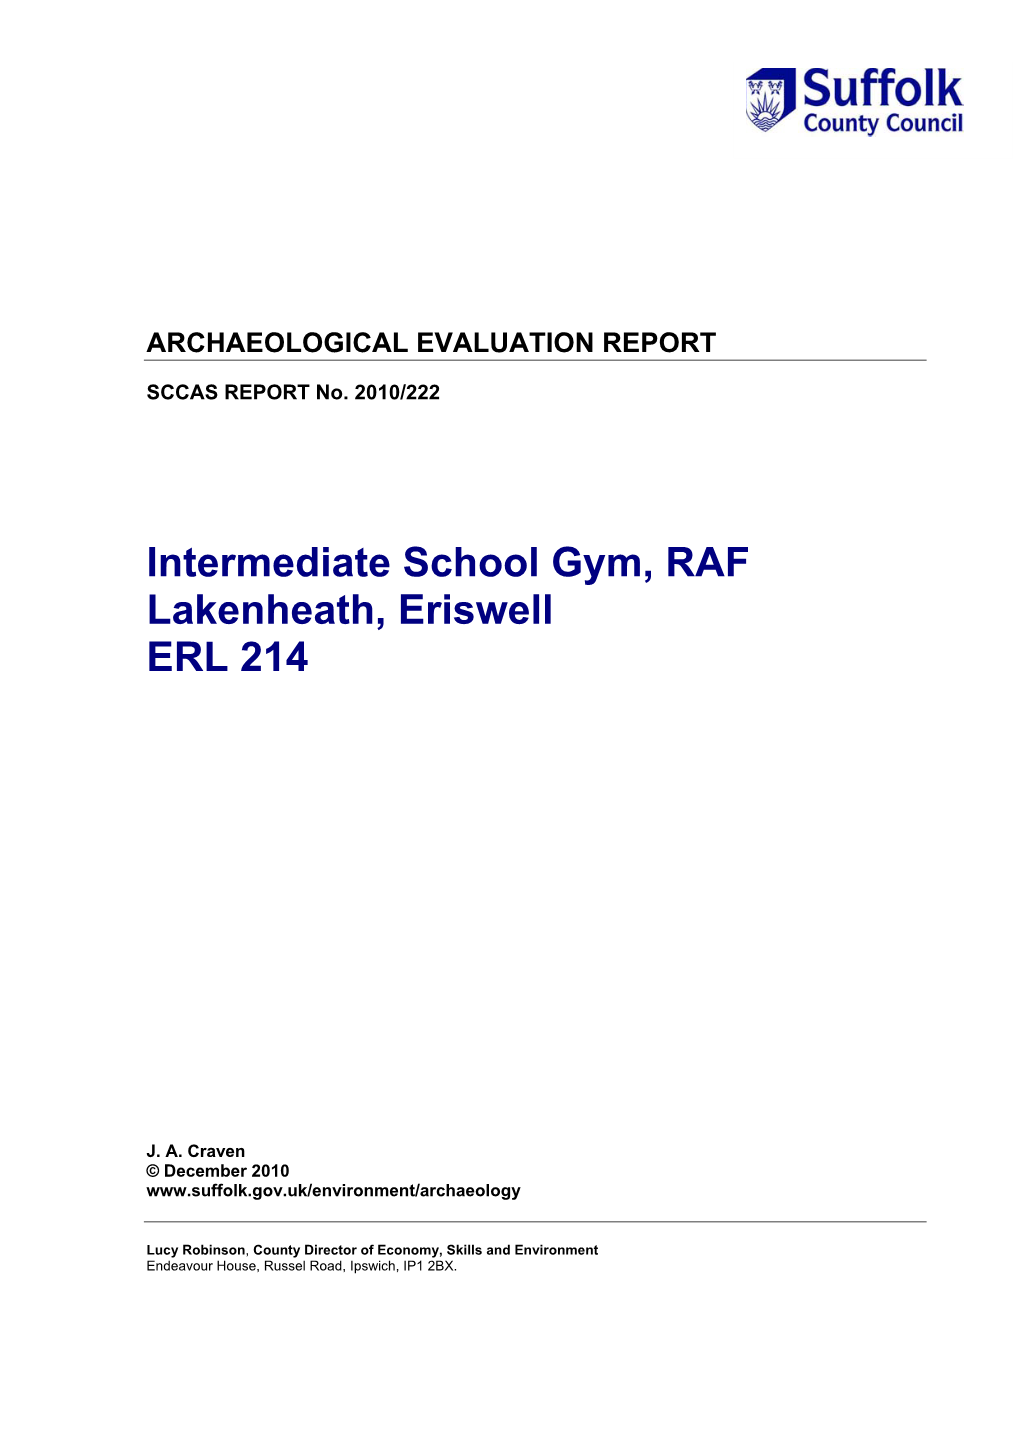 Intermediate School Gym, RAF Lakenheath, Eriswell ERL 214